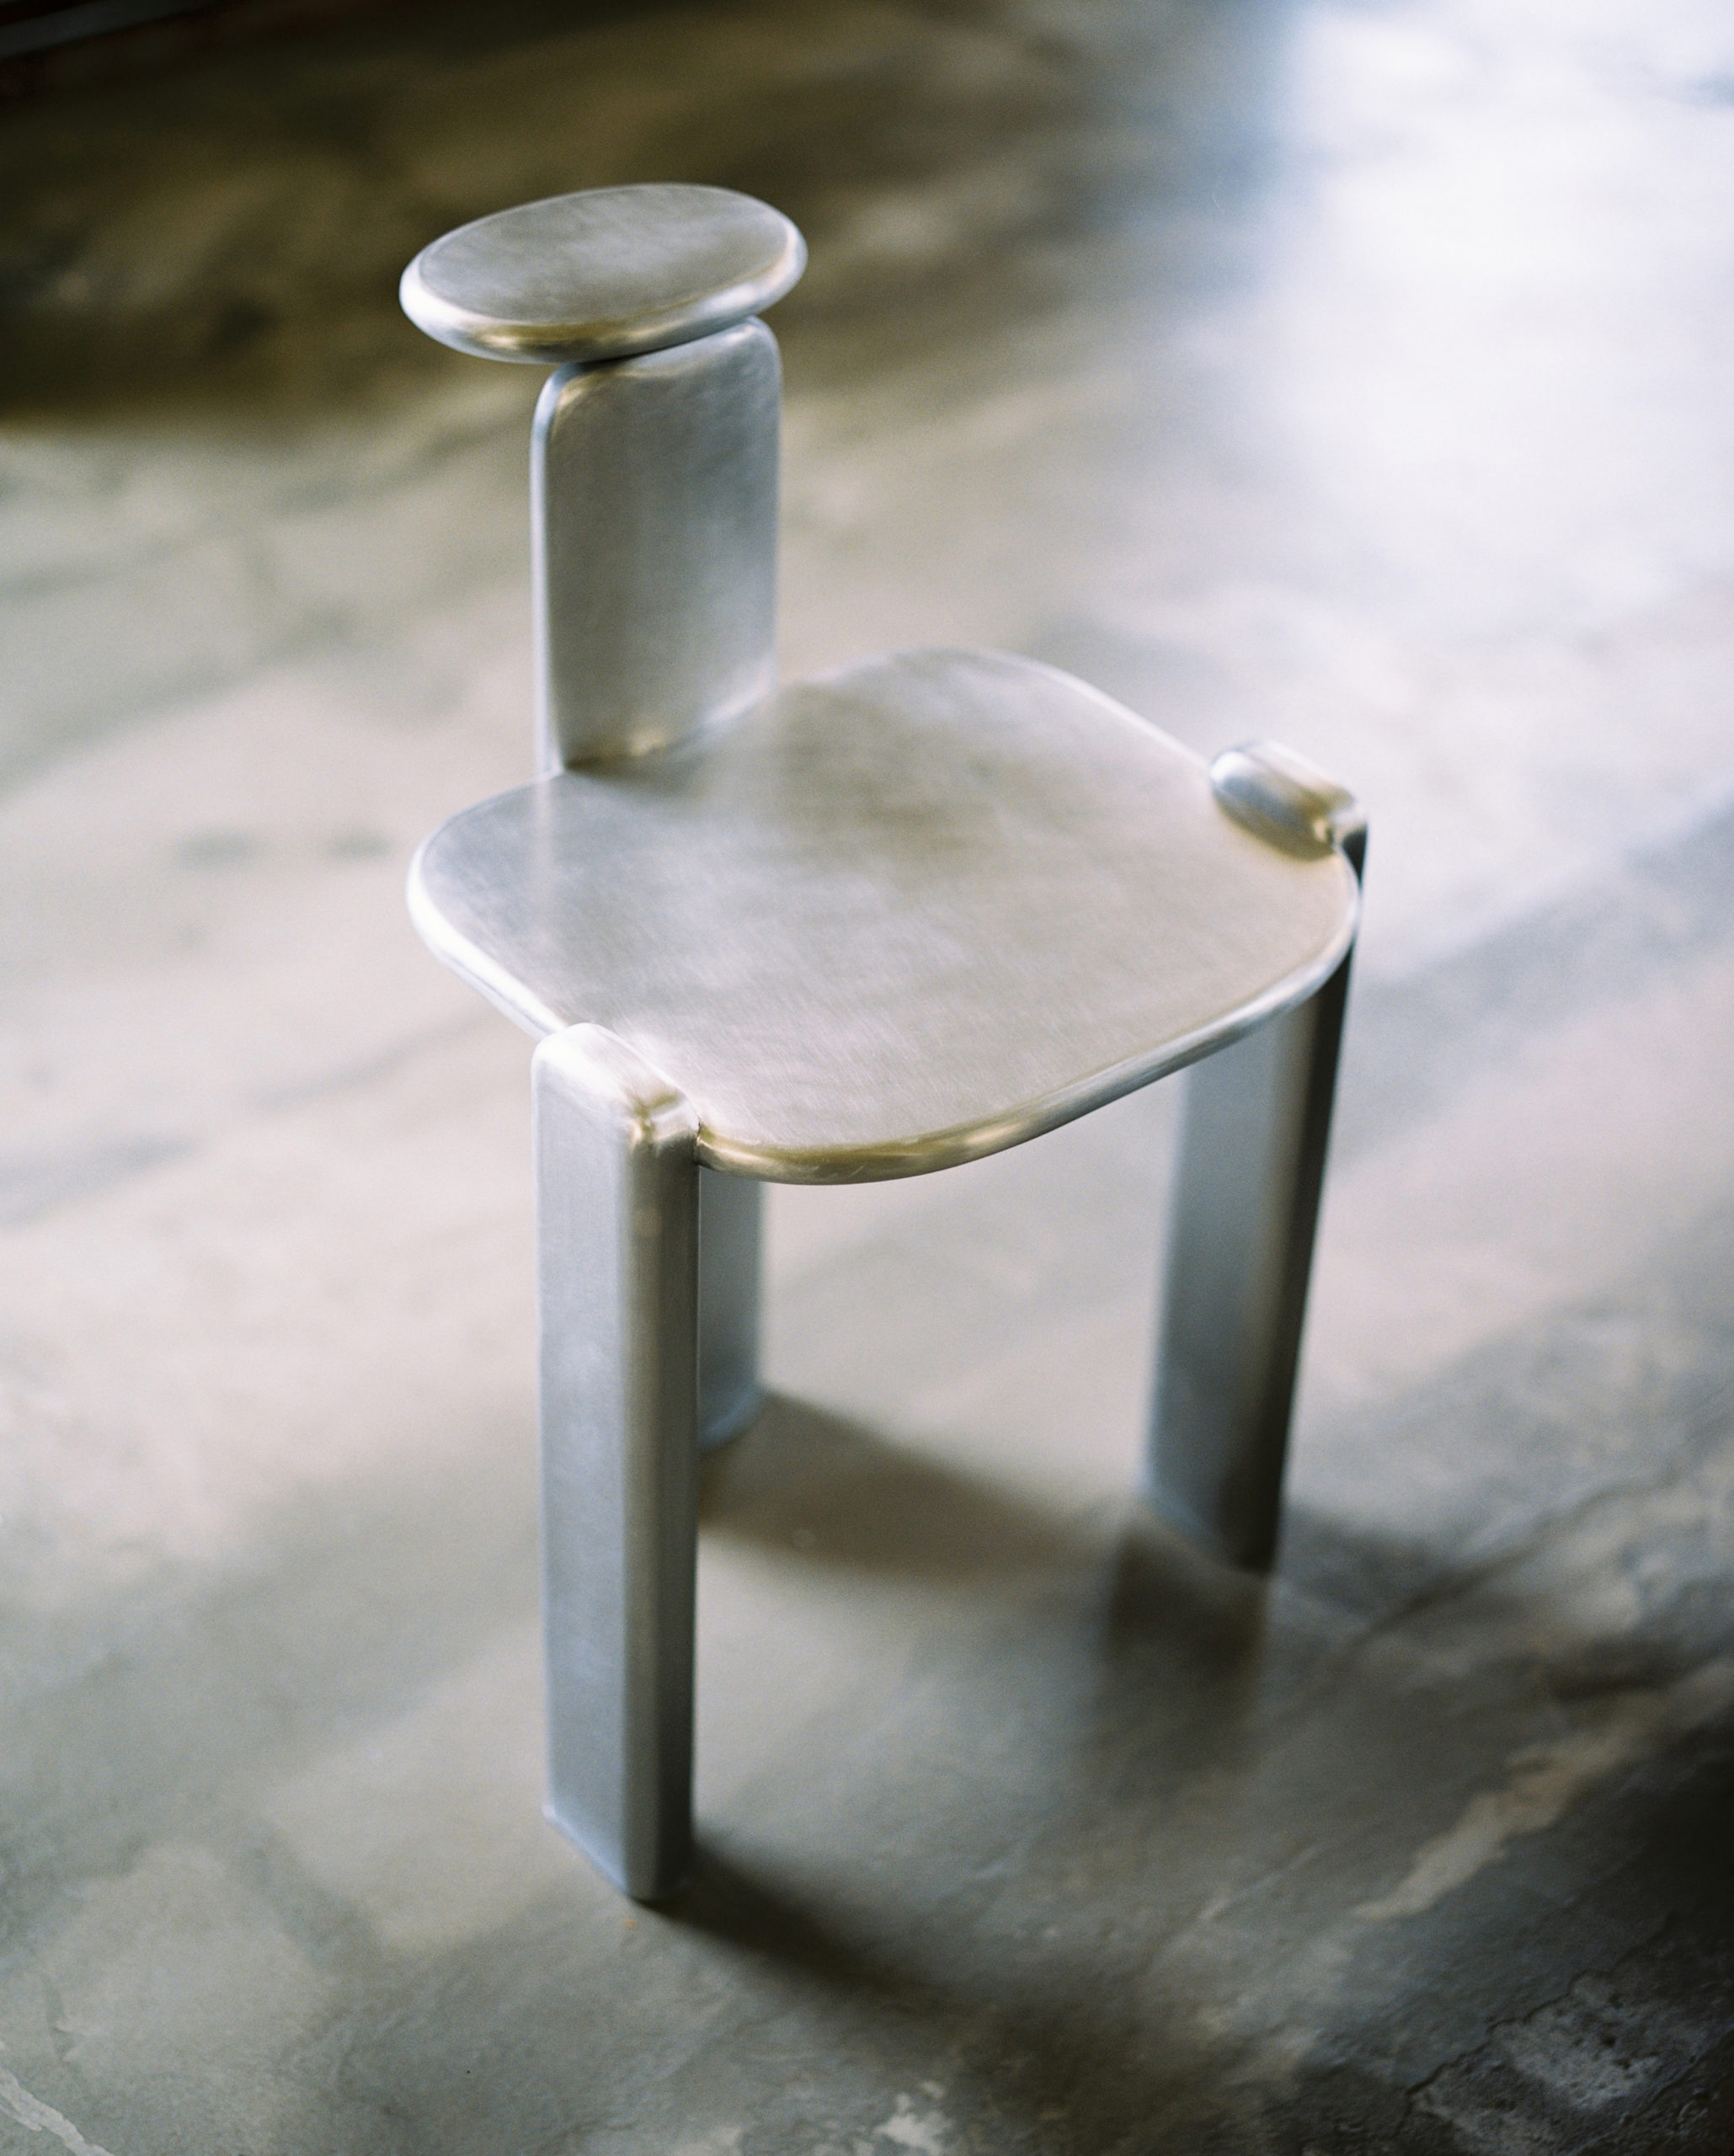 Medallion Chair